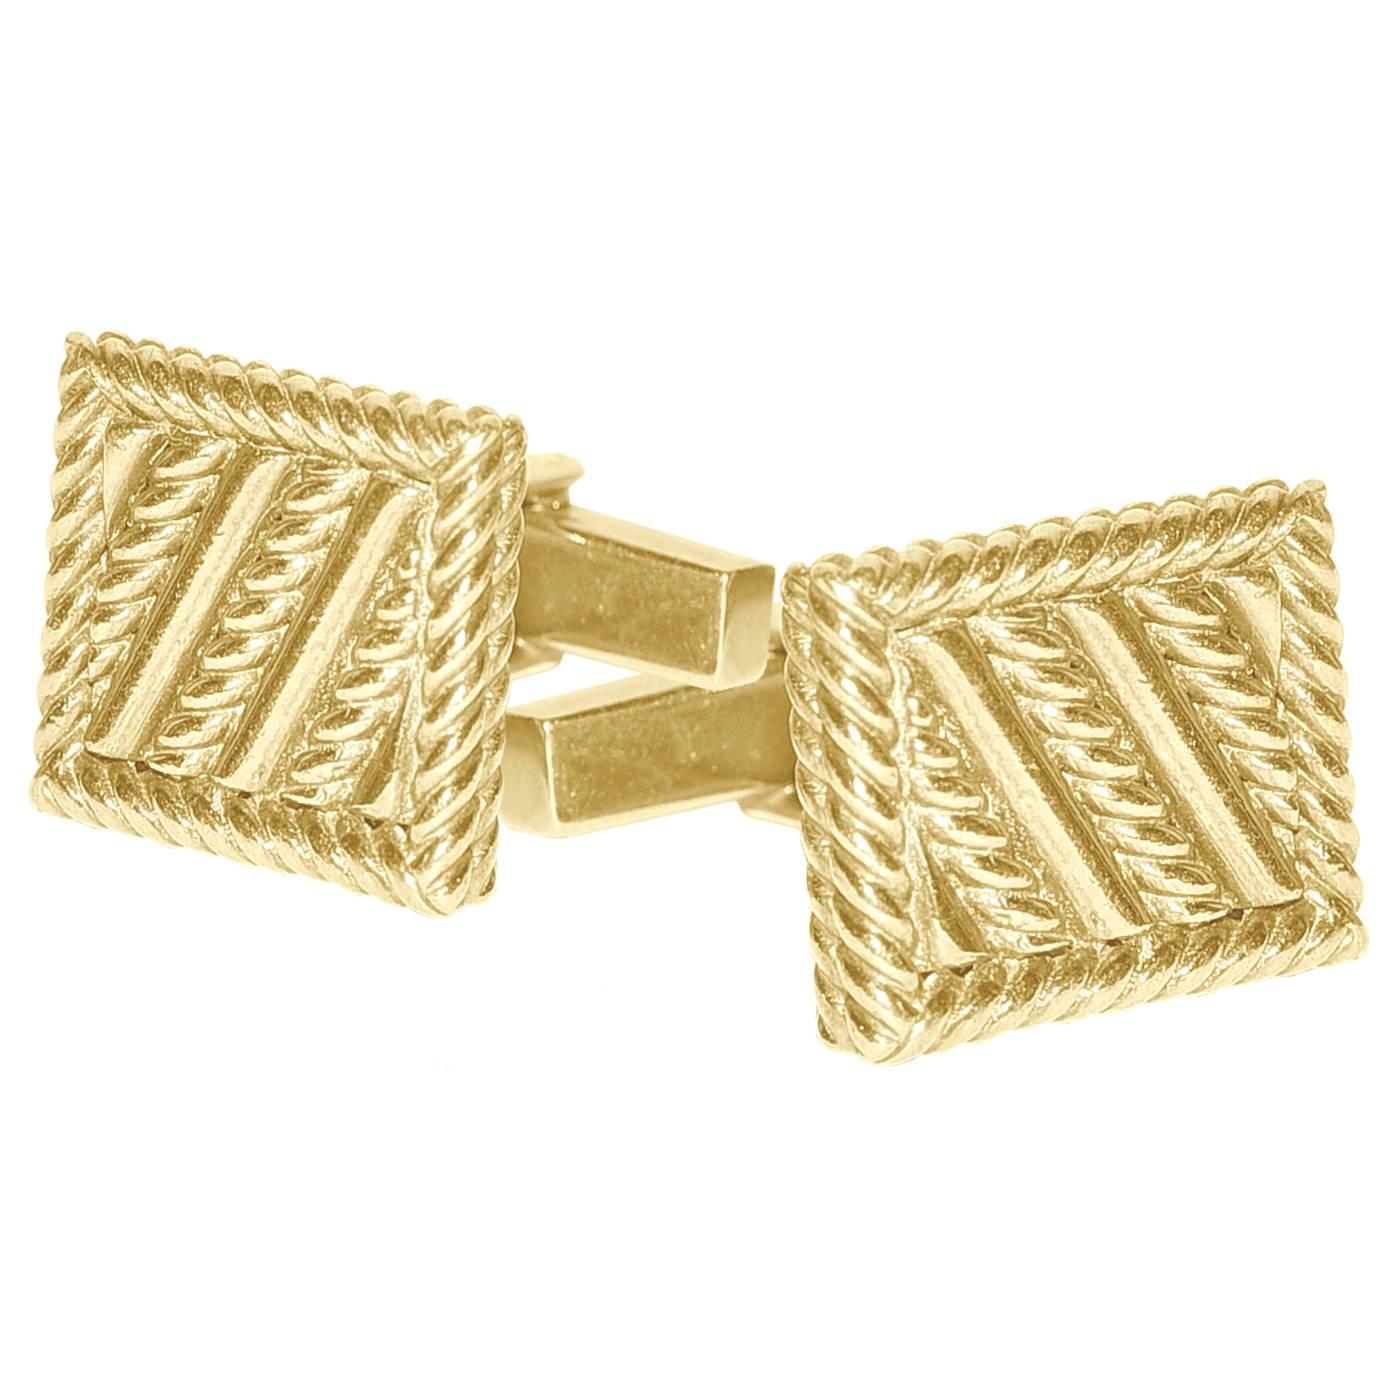 Tiffany & Co. Gold Cufflinks